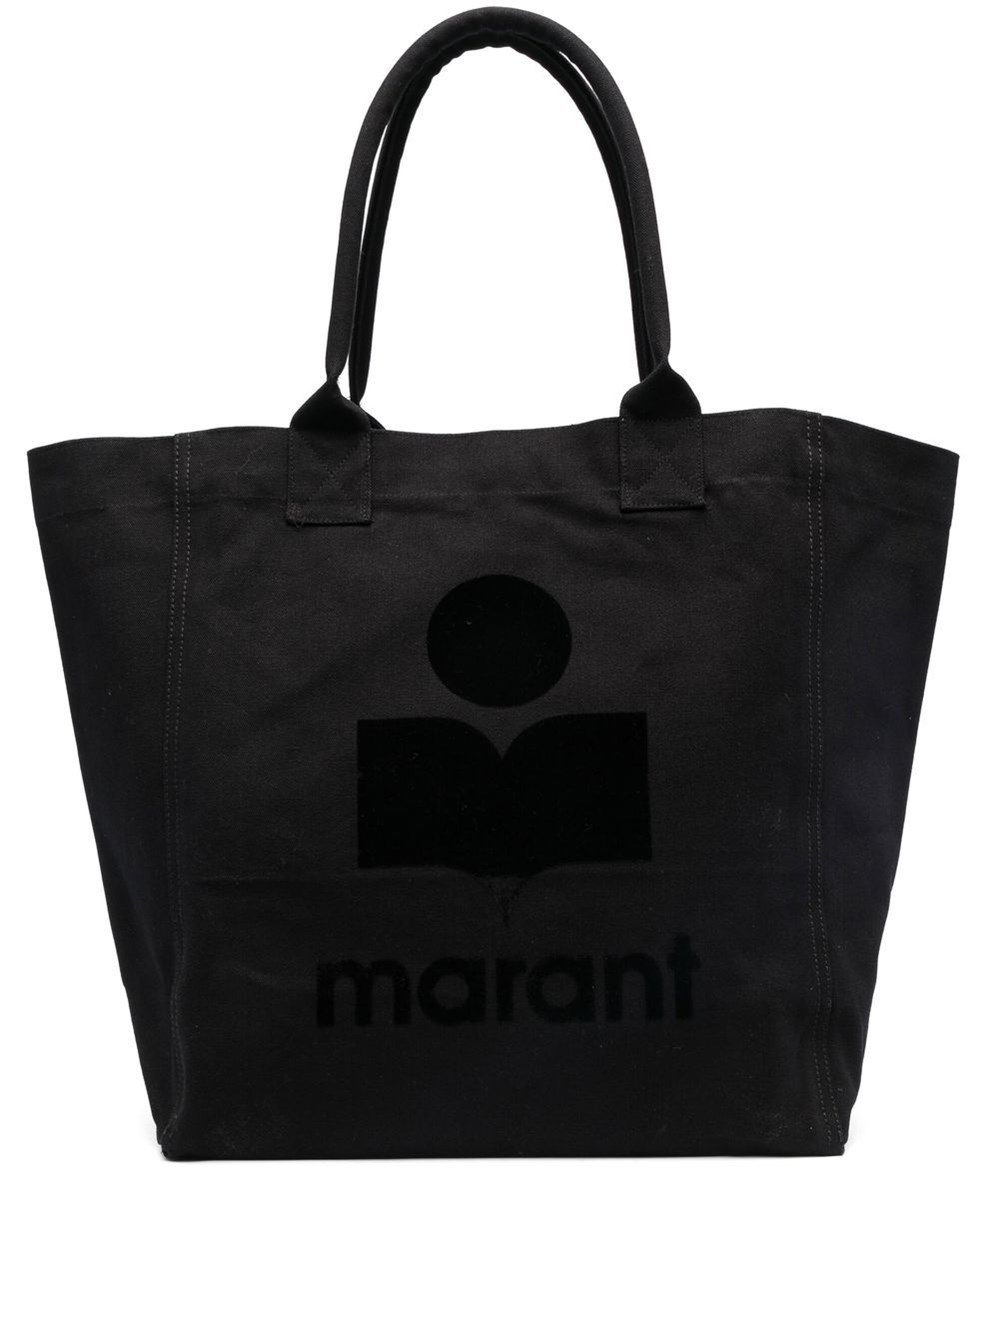 Isabel Marant Bag In Black